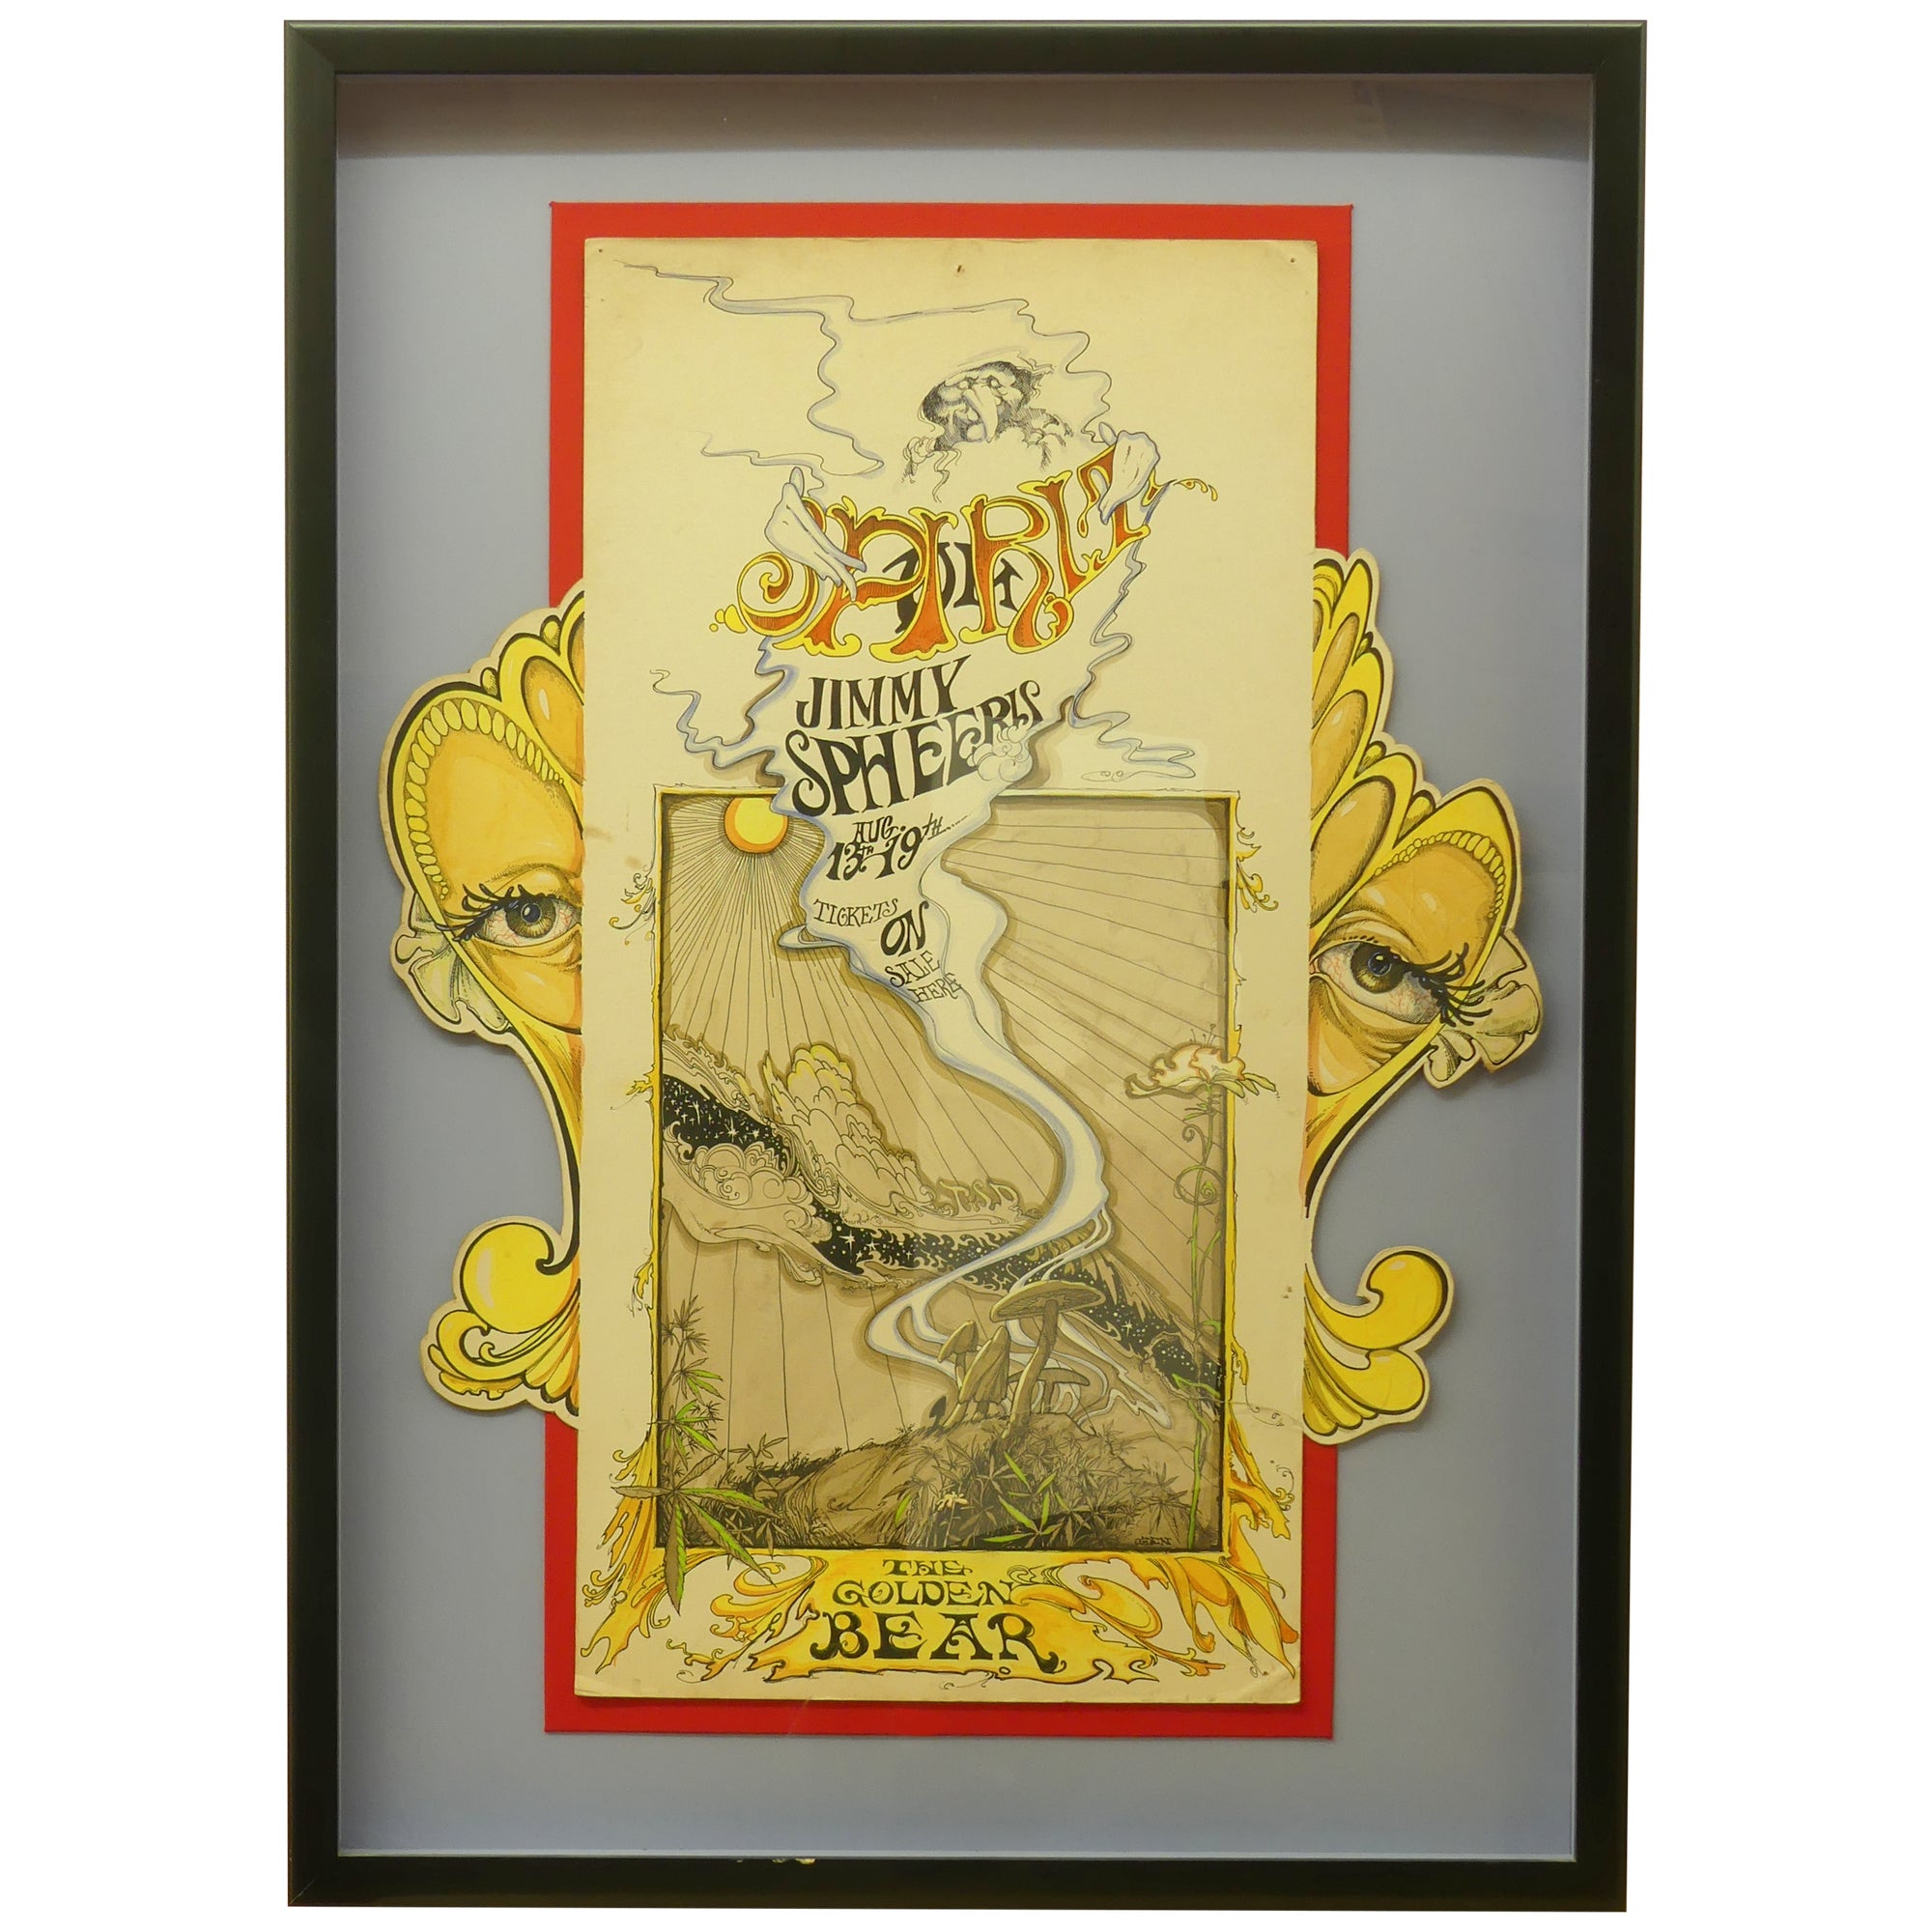 Original Rock Poster Art Beach at | Bill Golden Spirit / the Ogden Spheeris Bear, Jimmie for Huntington